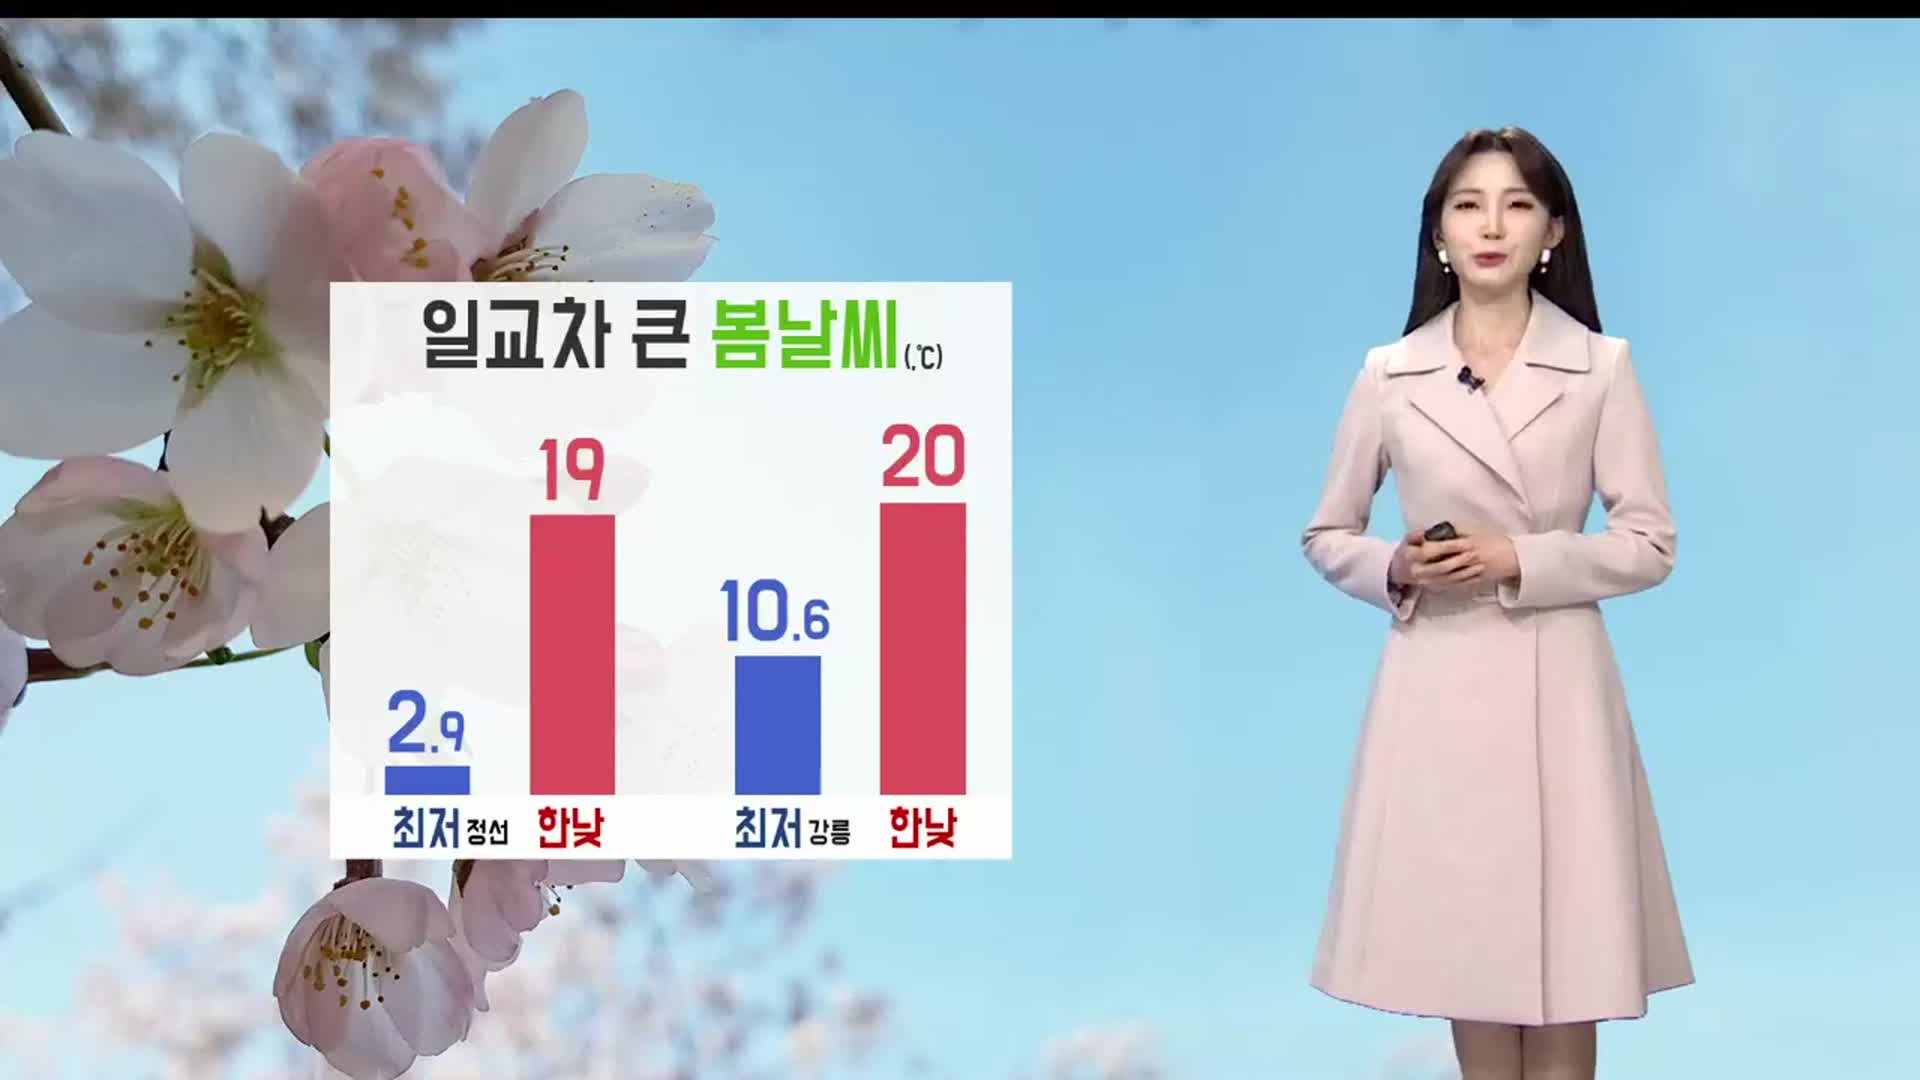 [날씨] 강릉 일교차 큰 봄날씨…최저 10.6도, 최고 20도